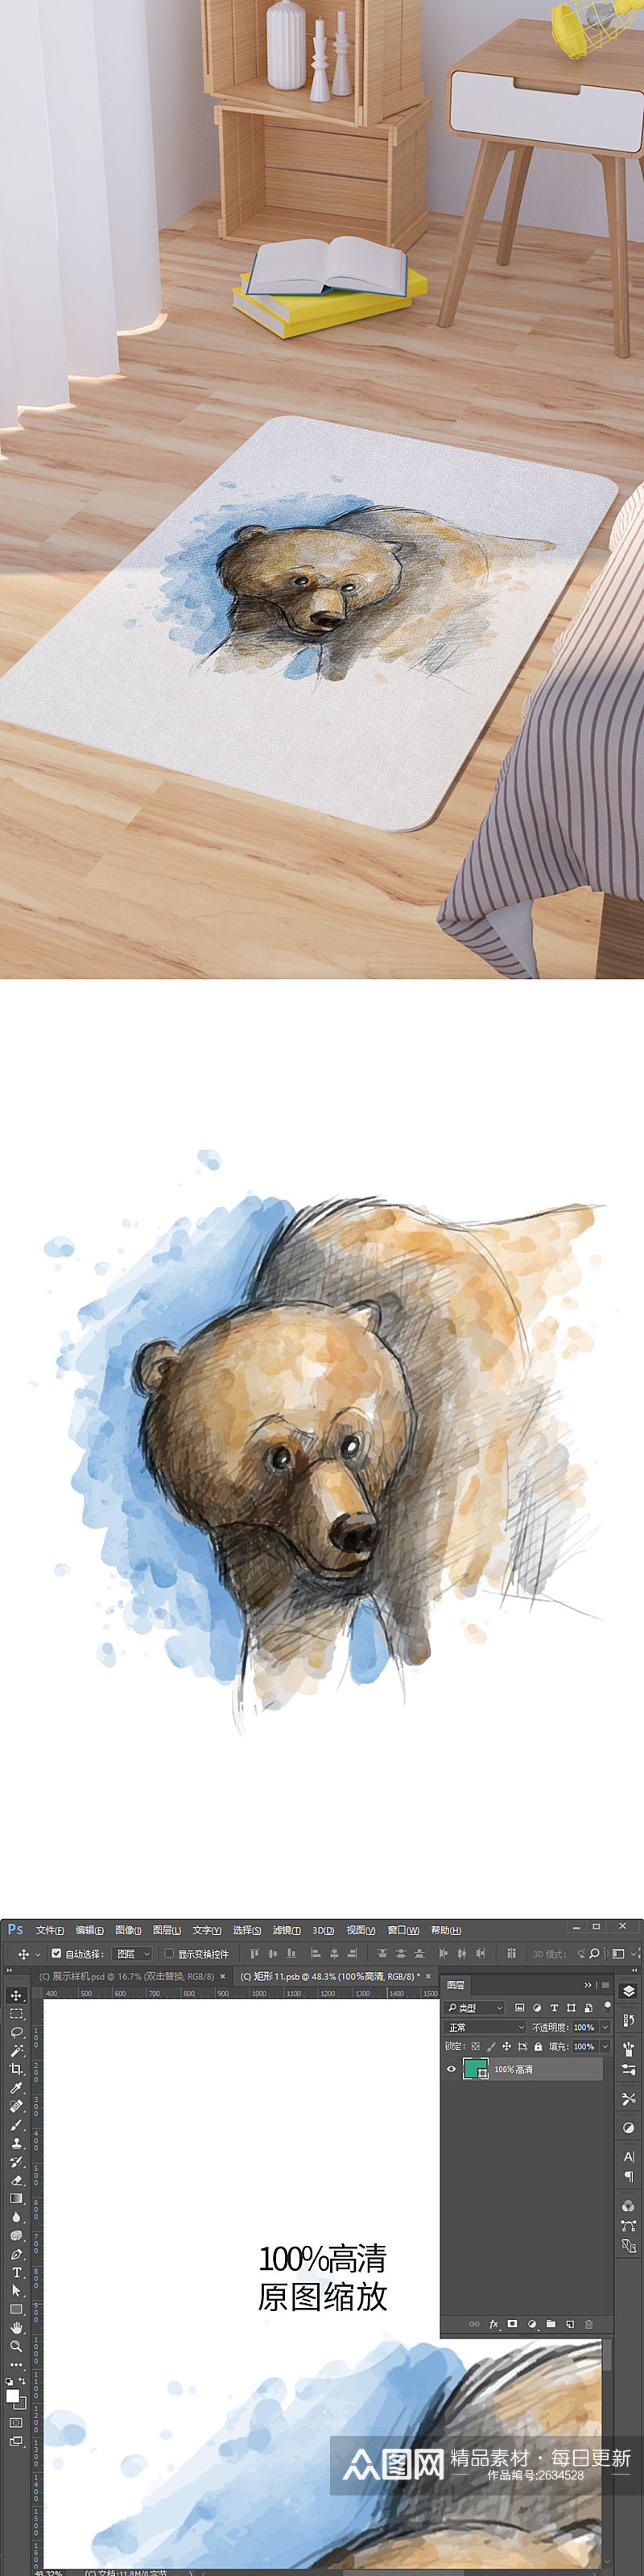 矢量水彩手绘棕熊脚垫地毯图案素材